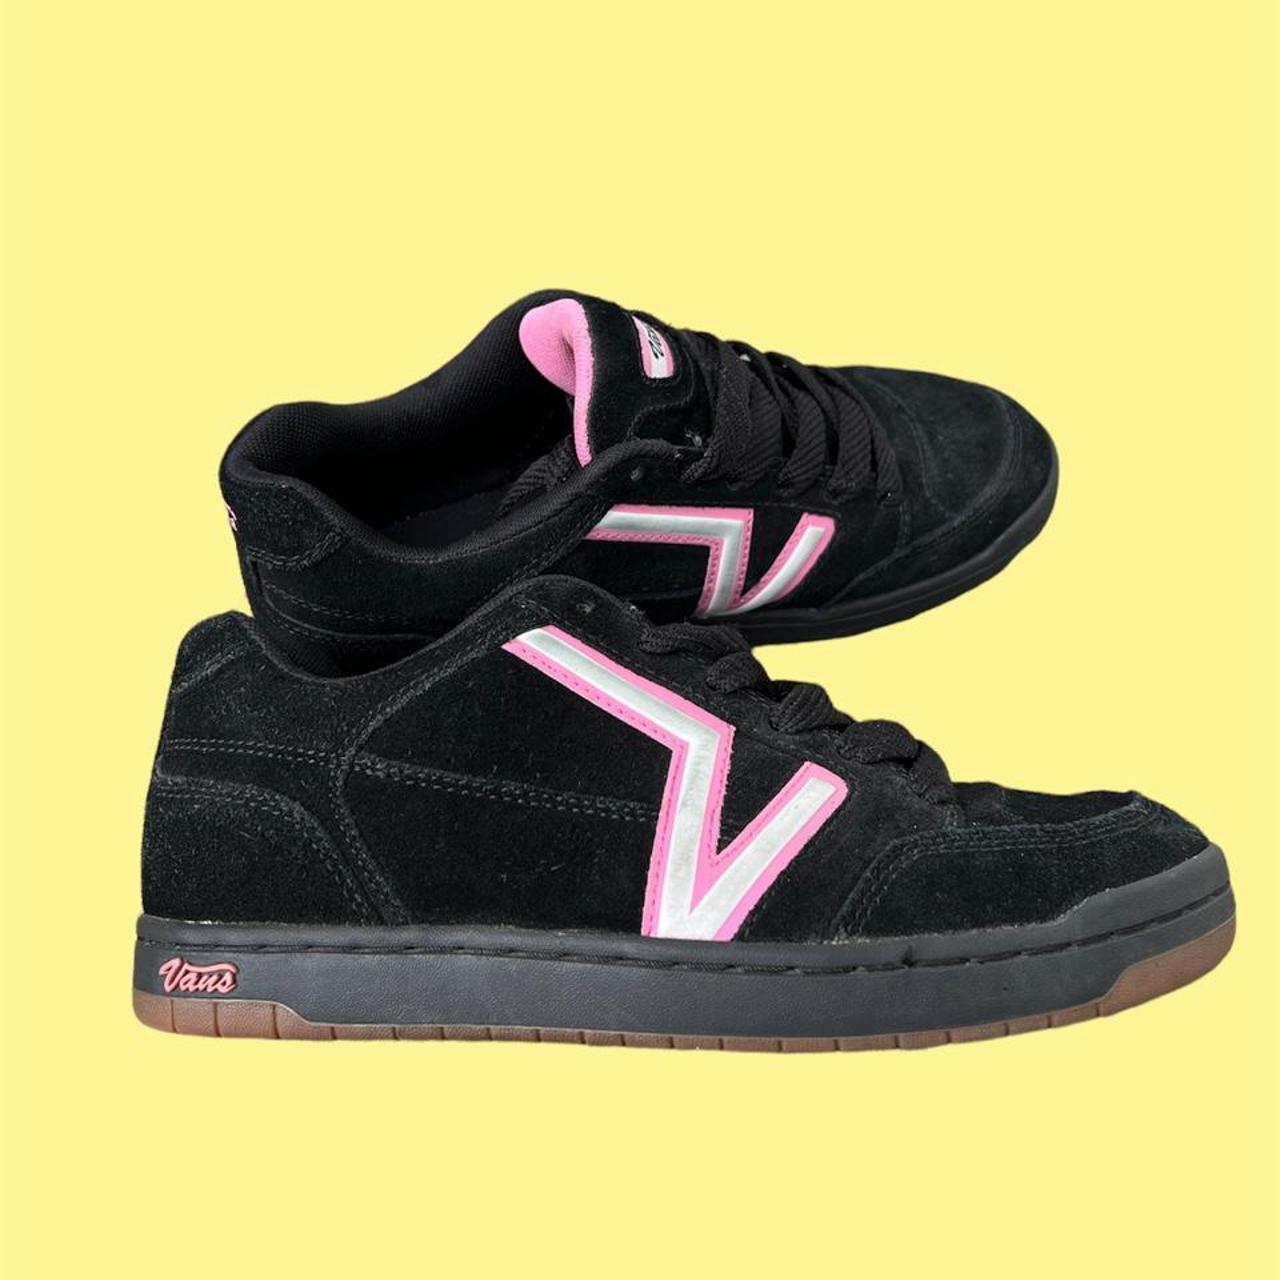 Vintage Vans Sneakers (Y2K Early 2000s drop) of... - Depop